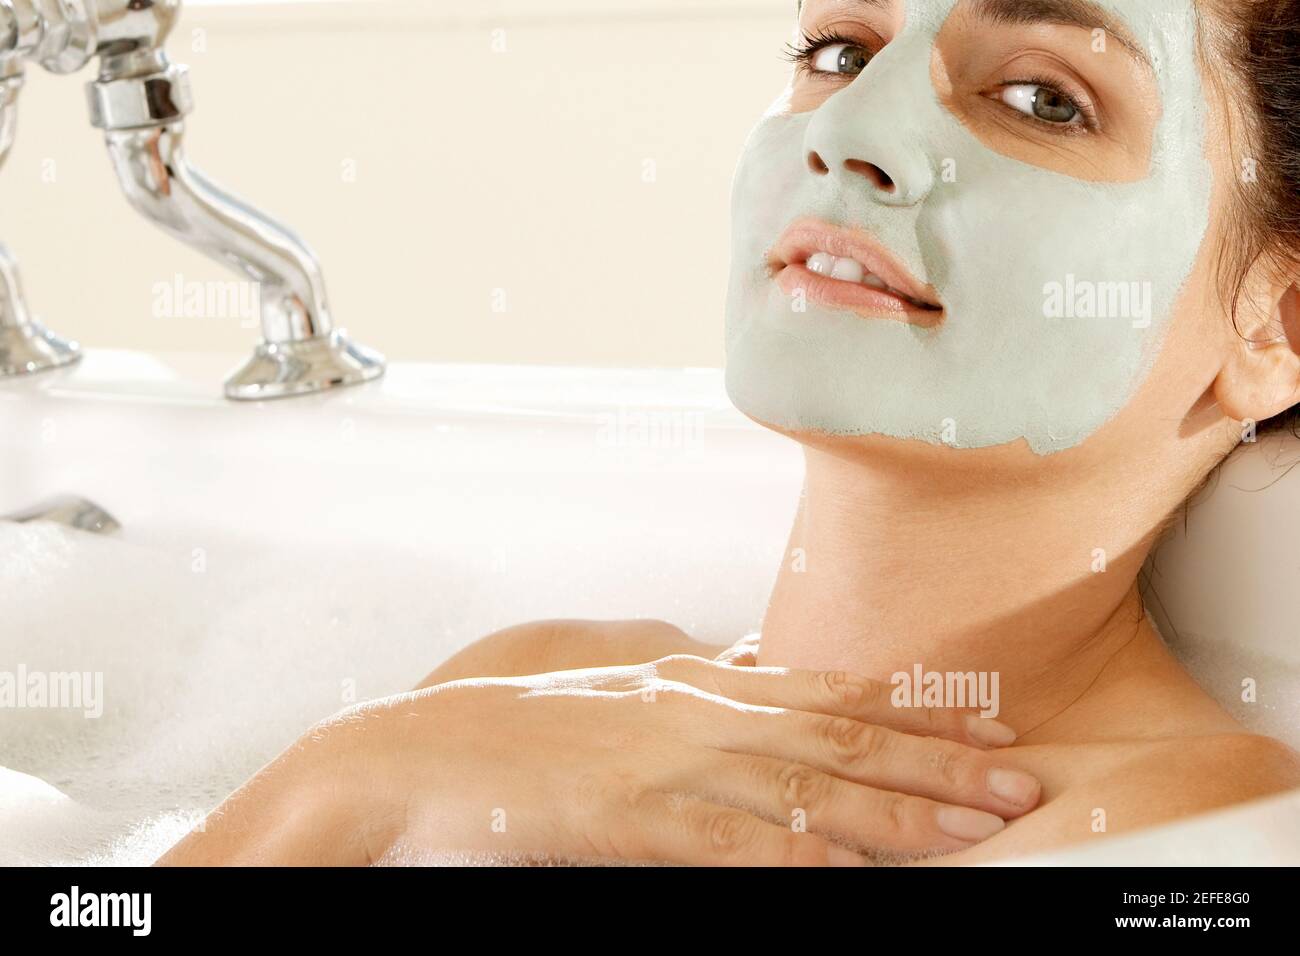 Primer plano de una mujer joven que lleva una máscara facial una bañera Foto de stock